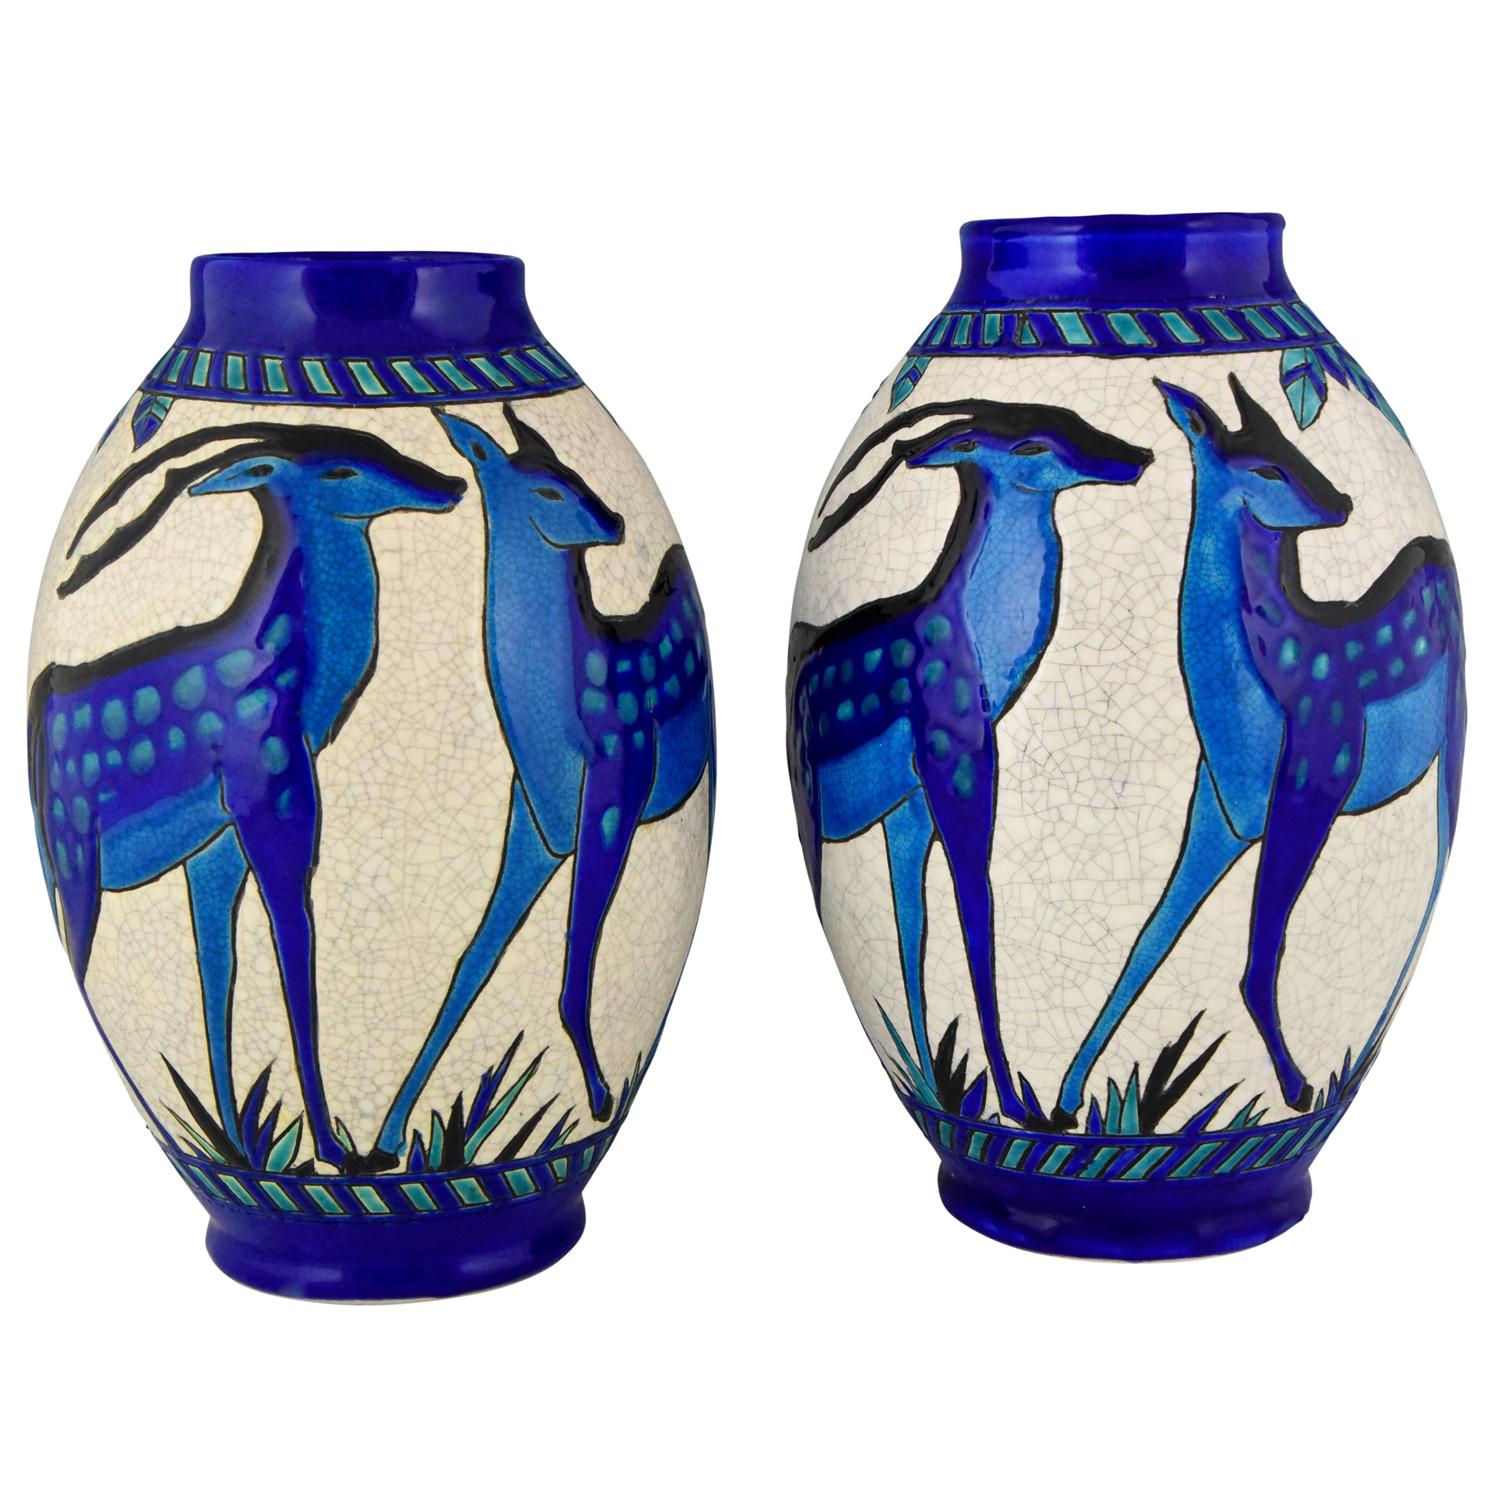 Art Deco Craquelé-Keramikvasen mit blauem Hirsch Charles Catteau für Keramis:: Paar